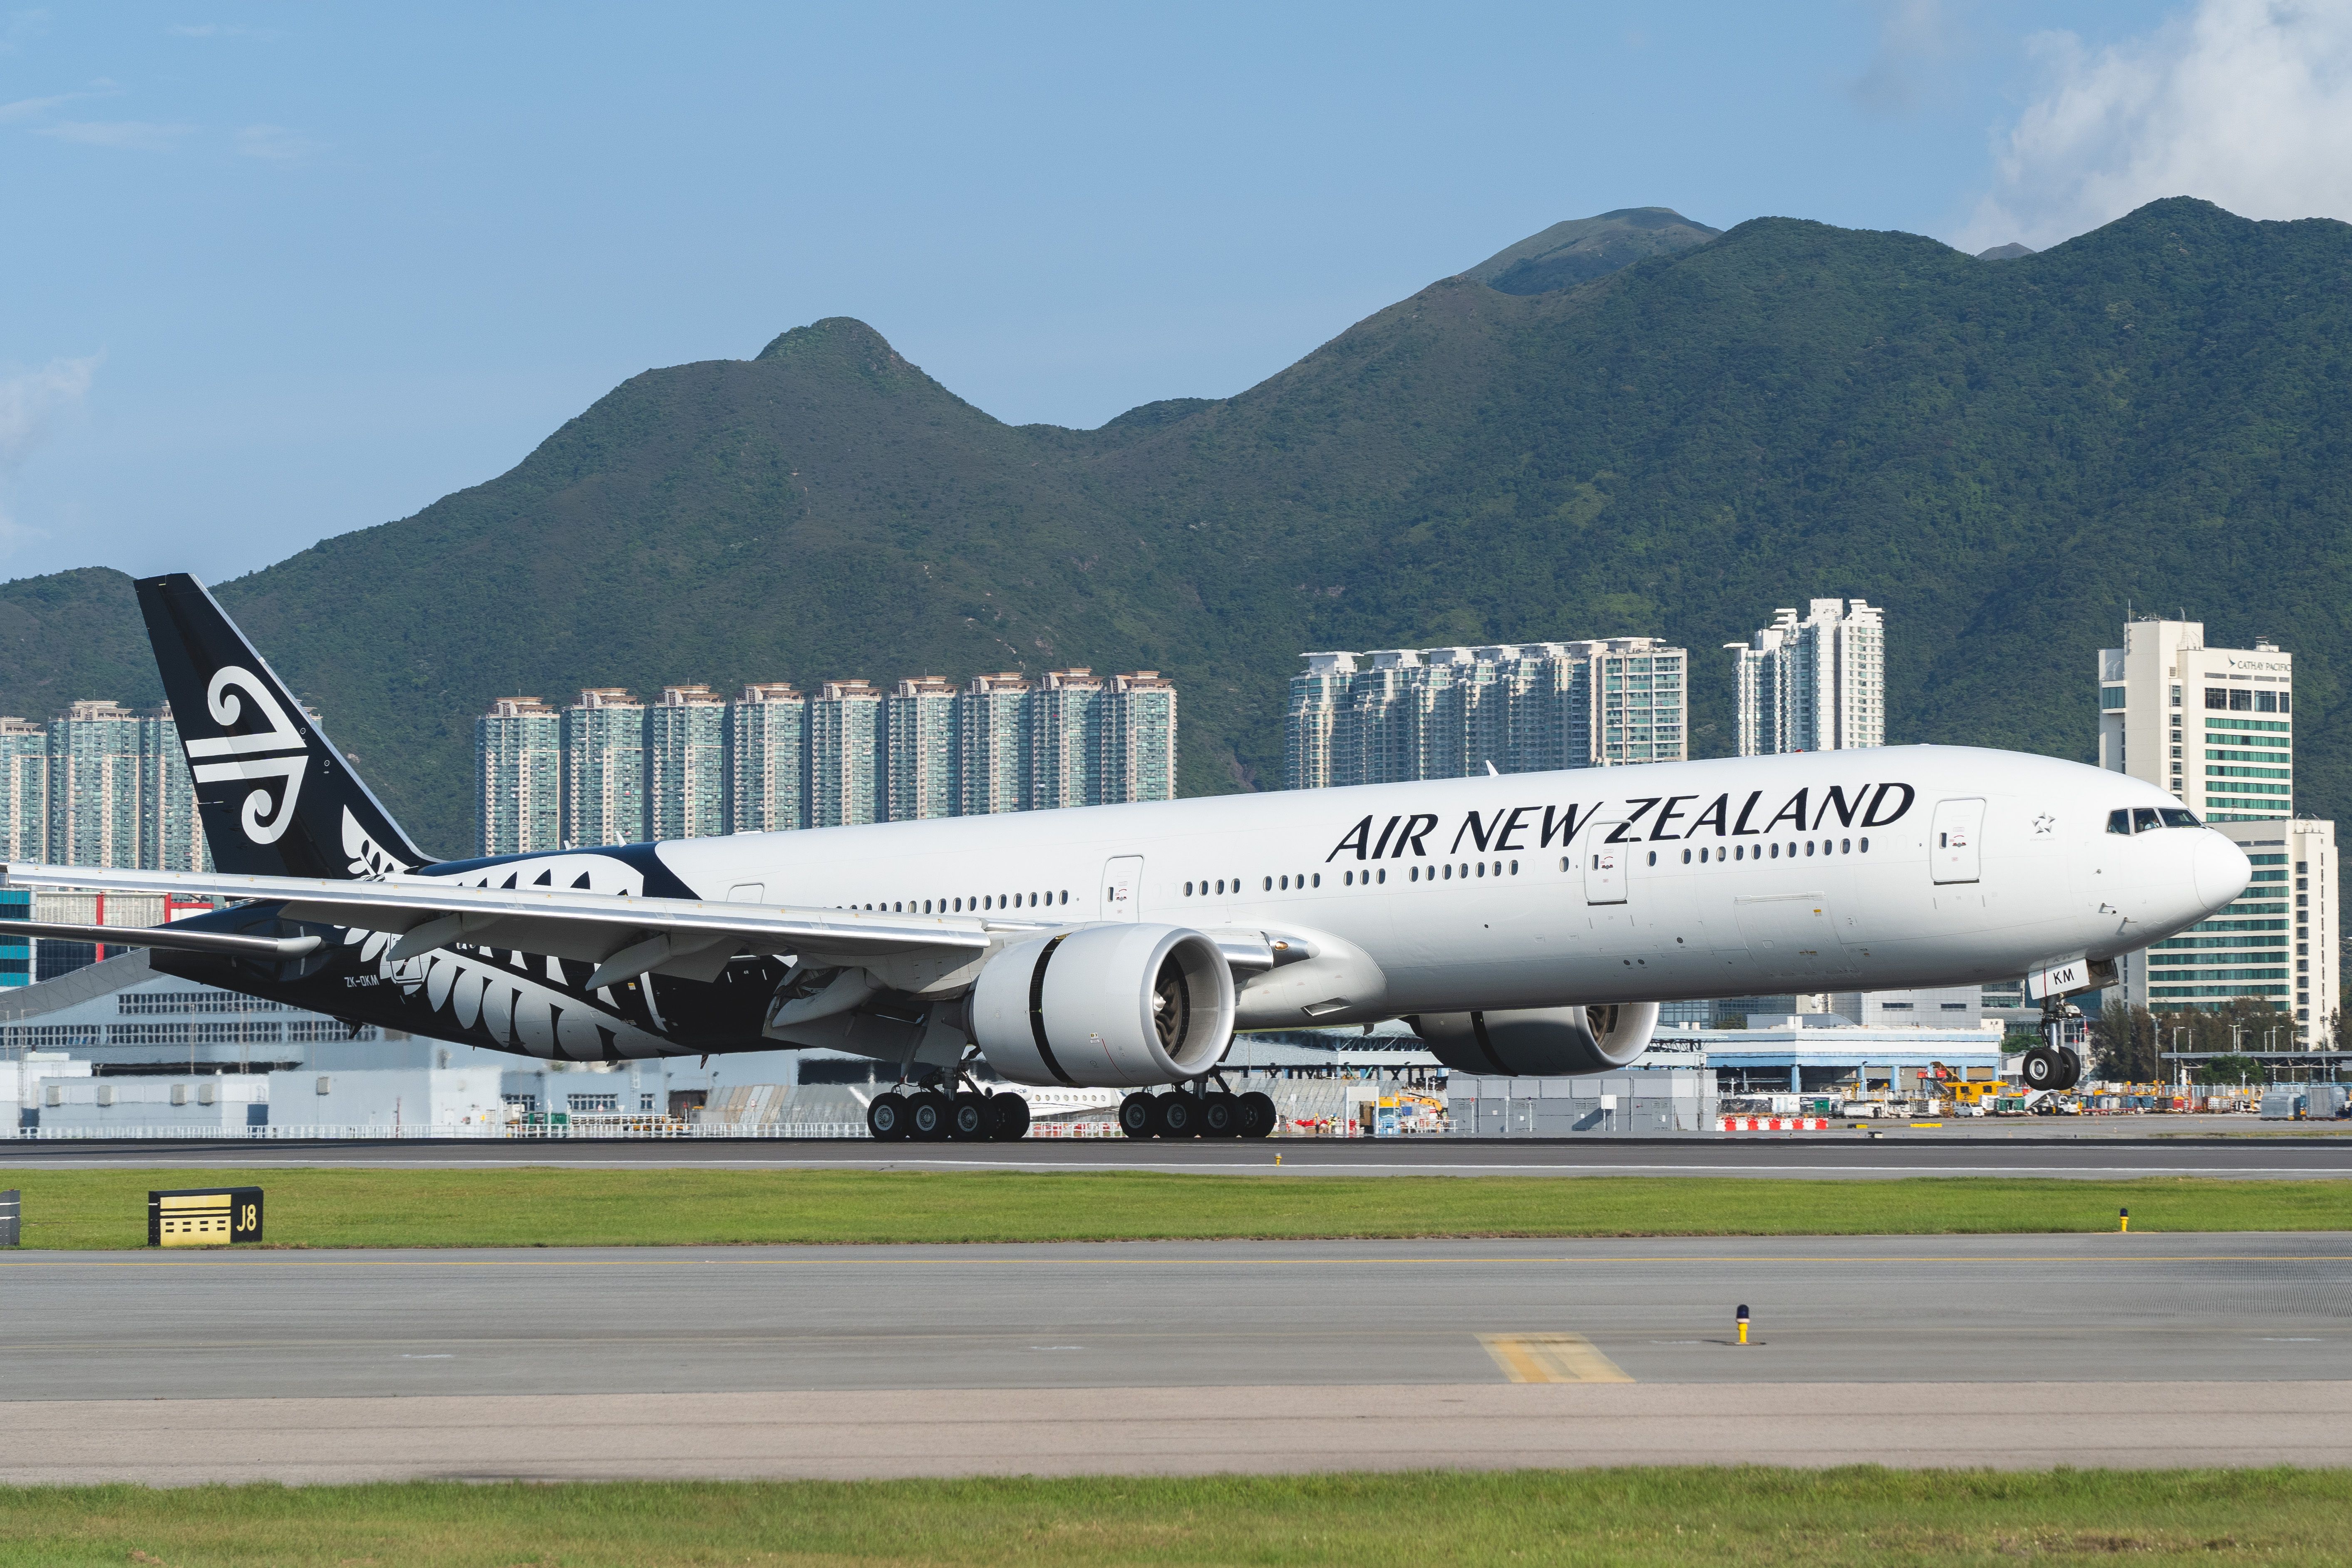 Air New Zealand Boeing 777-300ER landing in Hong Kong.